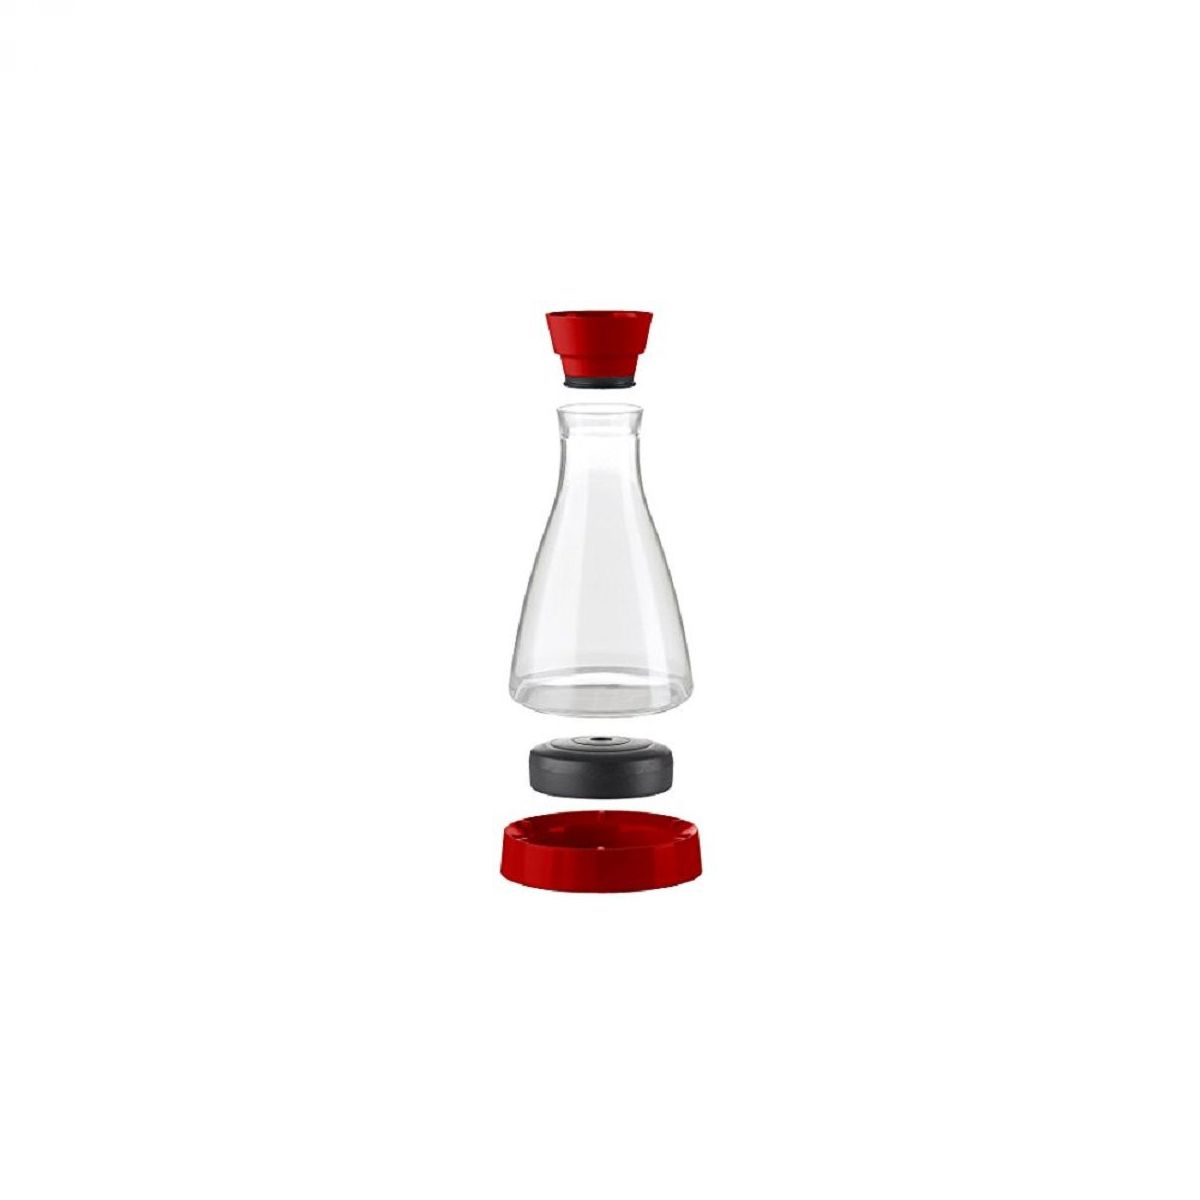 Steklena karafa s hladilnim podstavkom, 1 l, rdeča, sestavni deli - EMSA FLOW